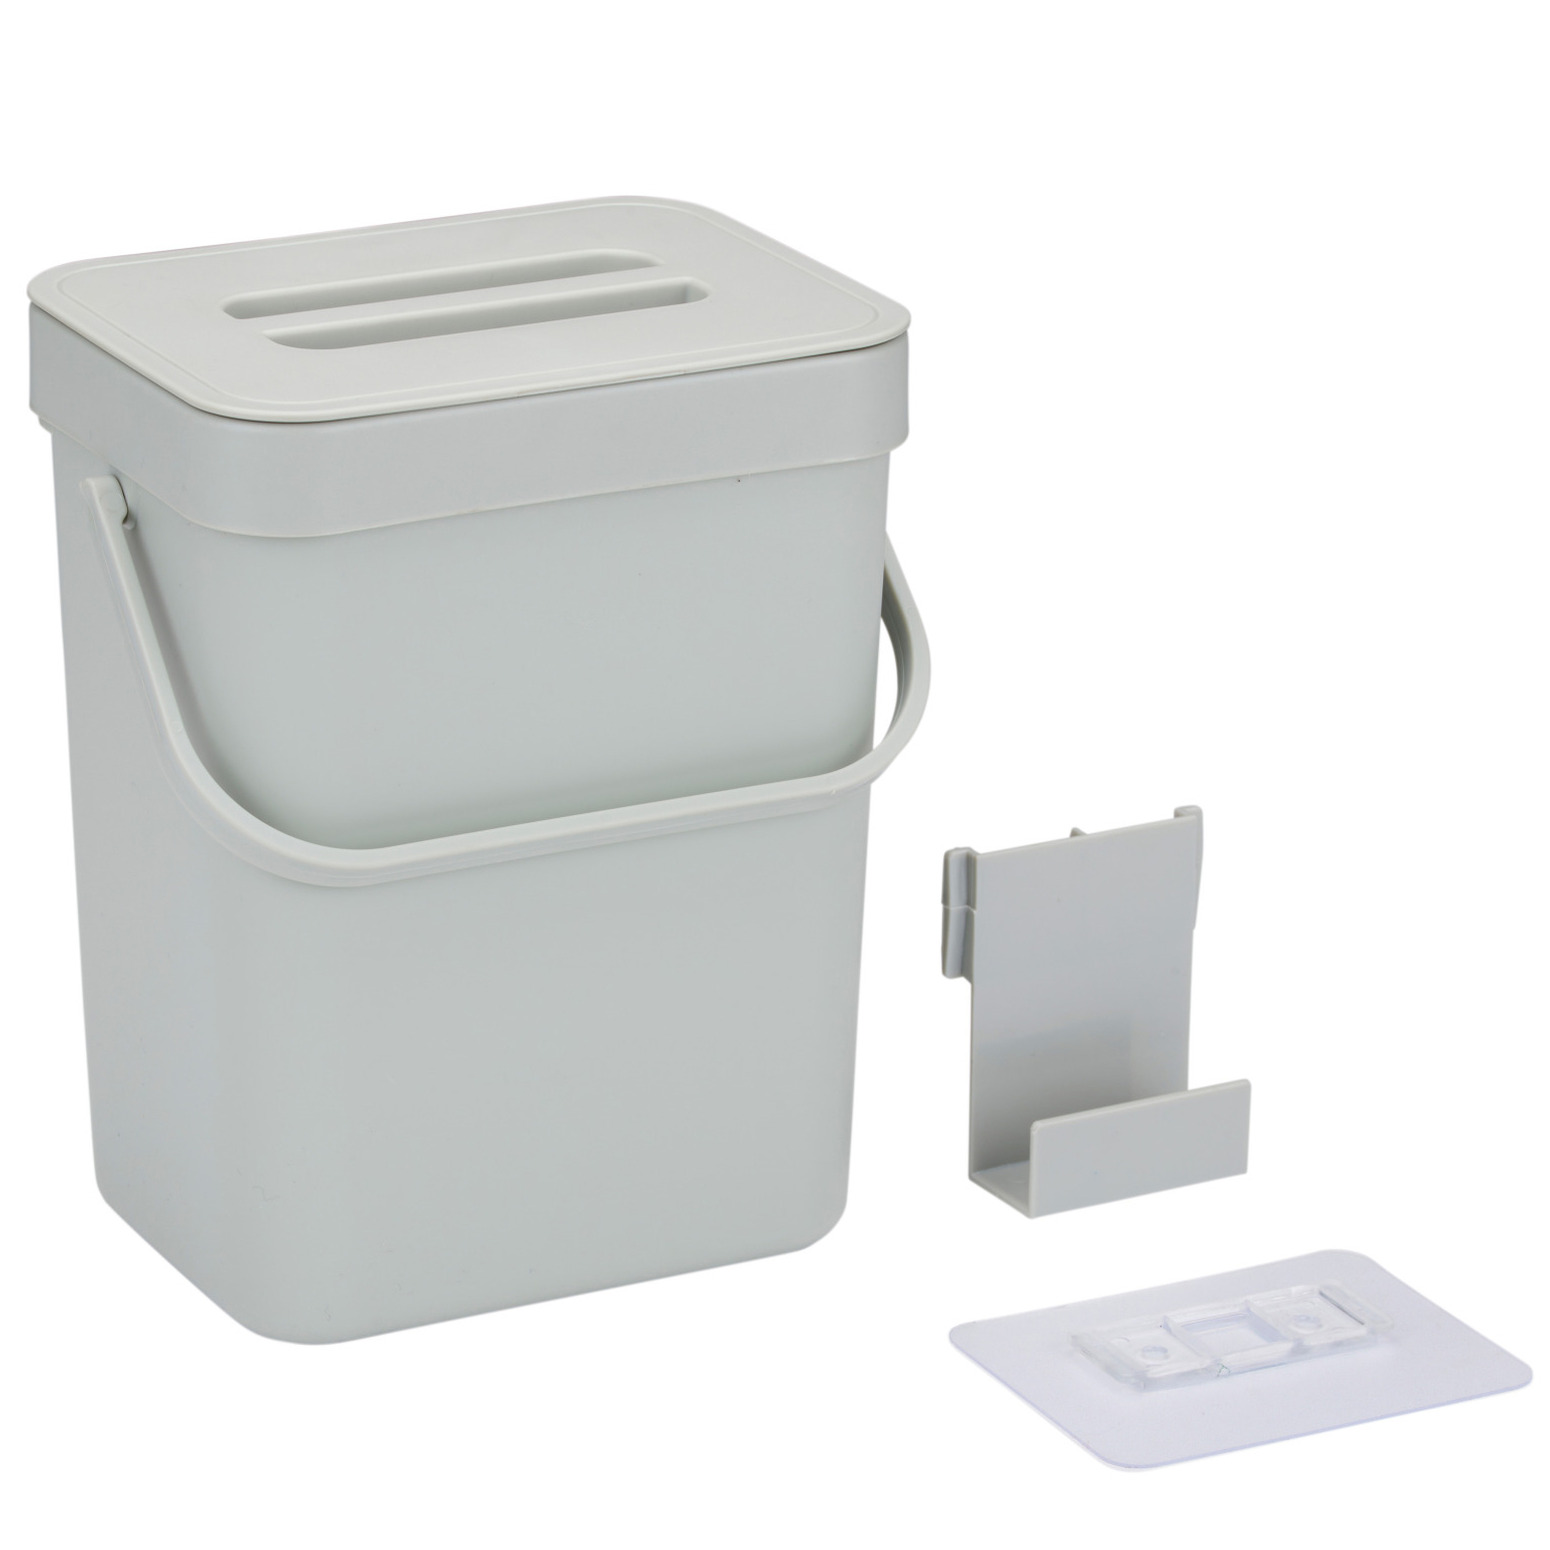 Gft afvalbakje voor aanrecht of aan keuken kastje 5L grijs afsluitbaar 24 x 19 x 14 cm